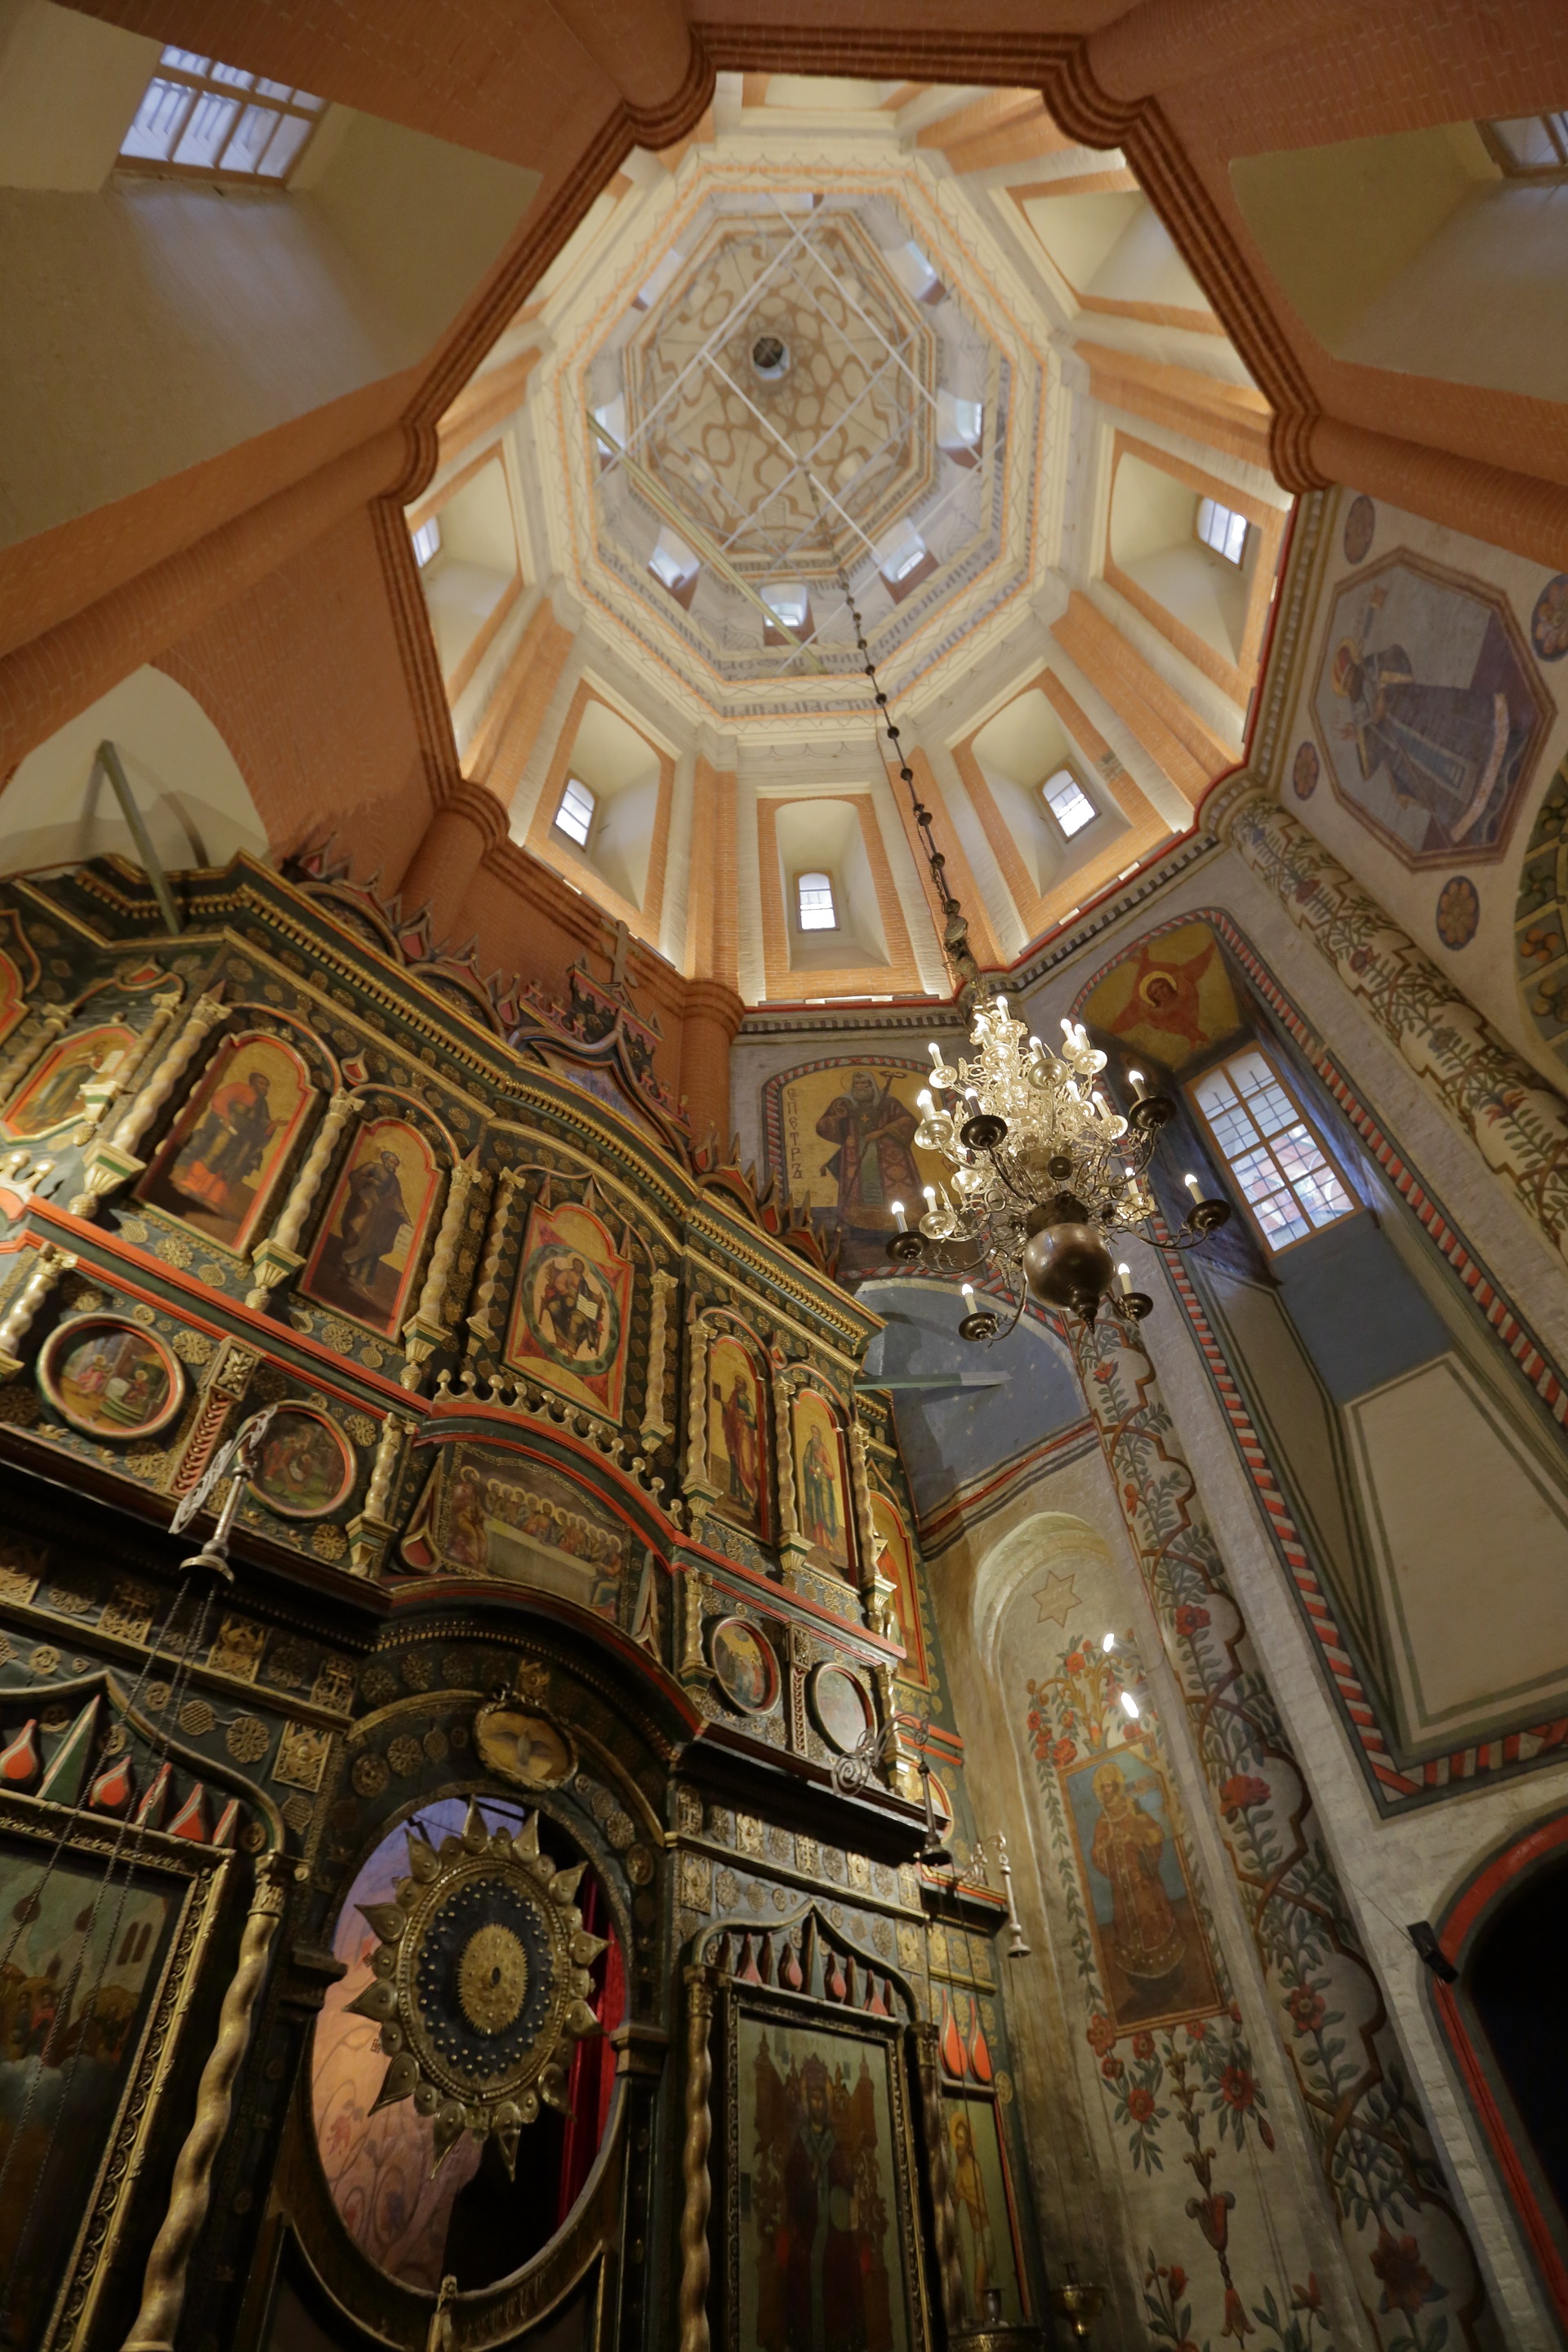 Temný interiér s úzkými průzory je spíše skromný a jiné moskevské chrámy ho se svými zbarvenými ikonami hravě předčí.